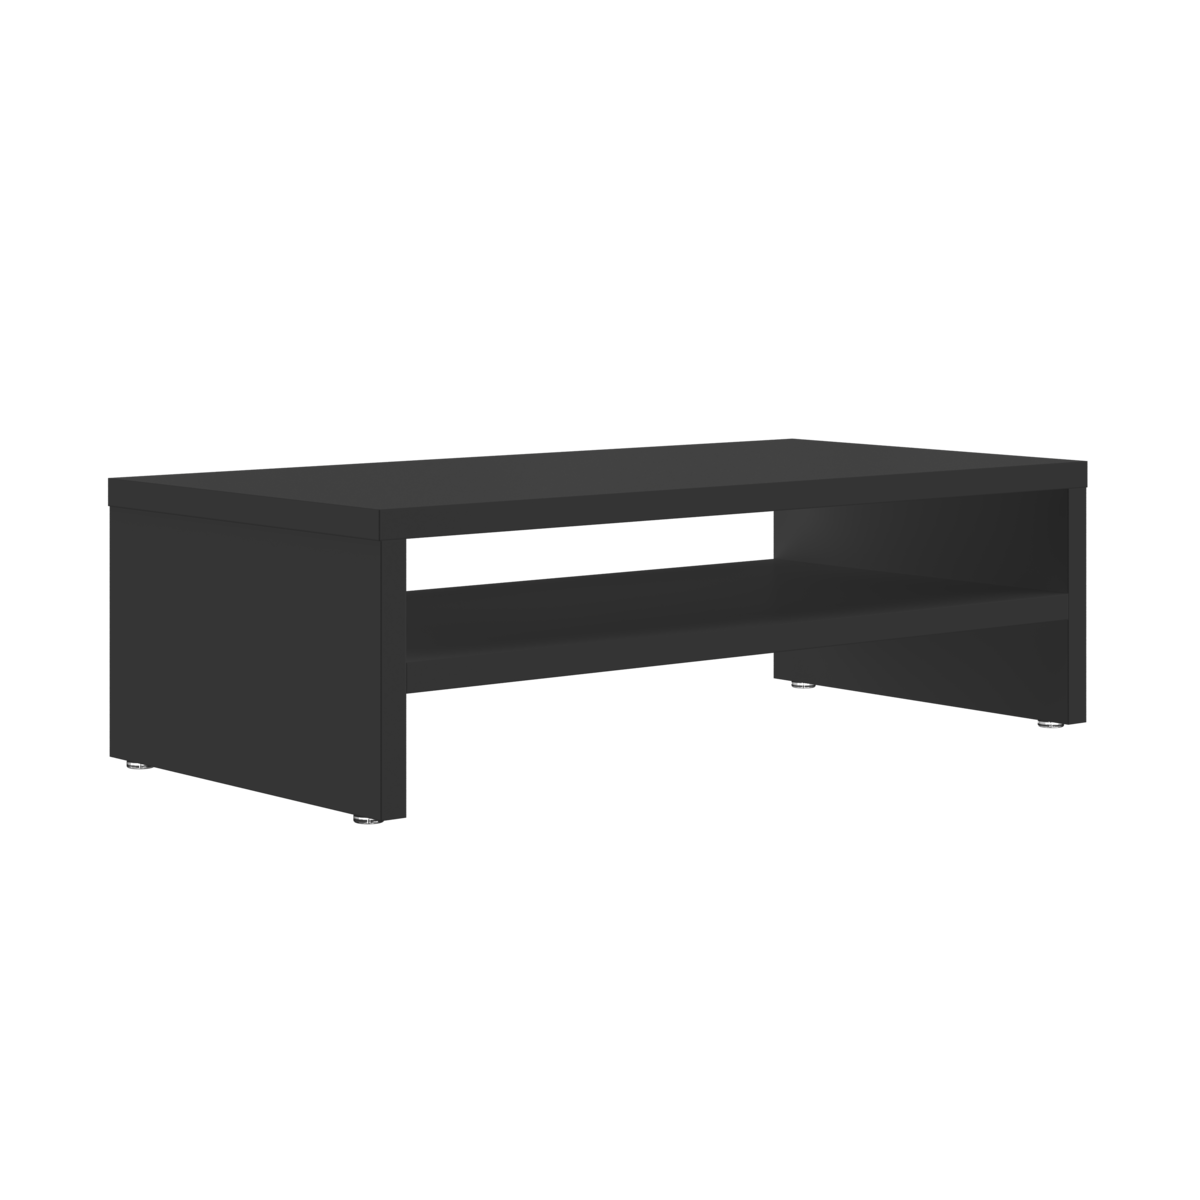 Aparador para monitor, apoio de mesa para monitor, prateleira mesa - Preto - 3